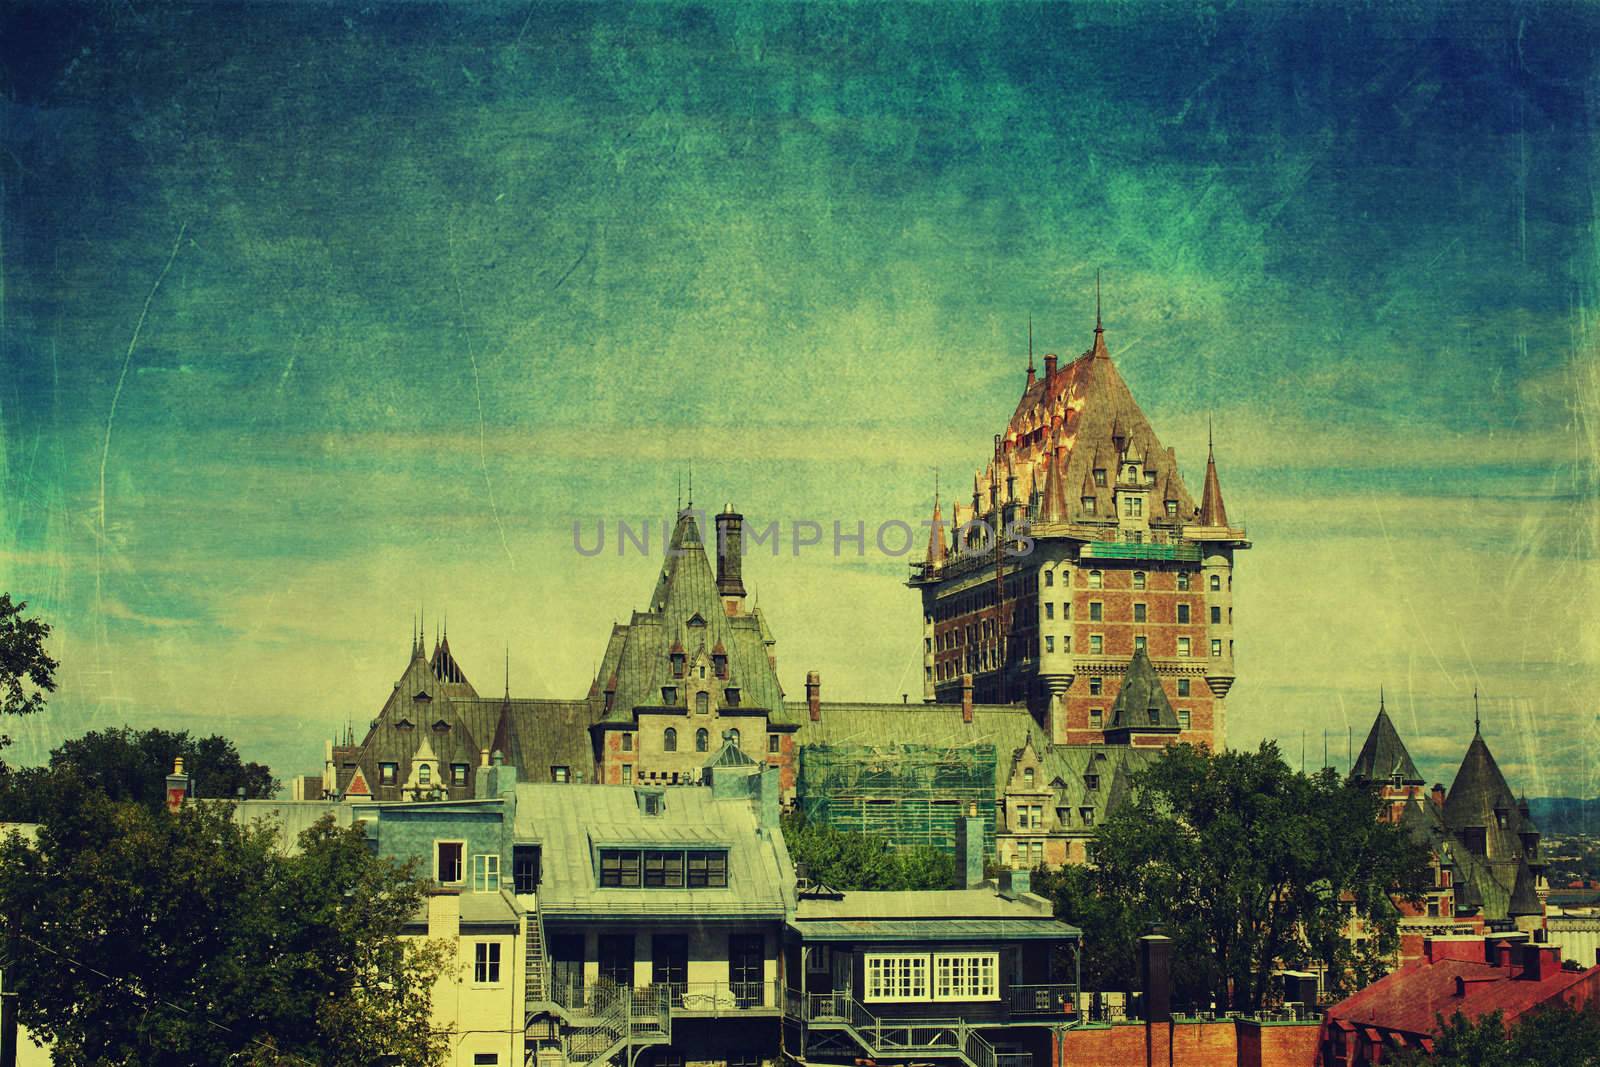 The ancient castle. Vintage by petrkurgan